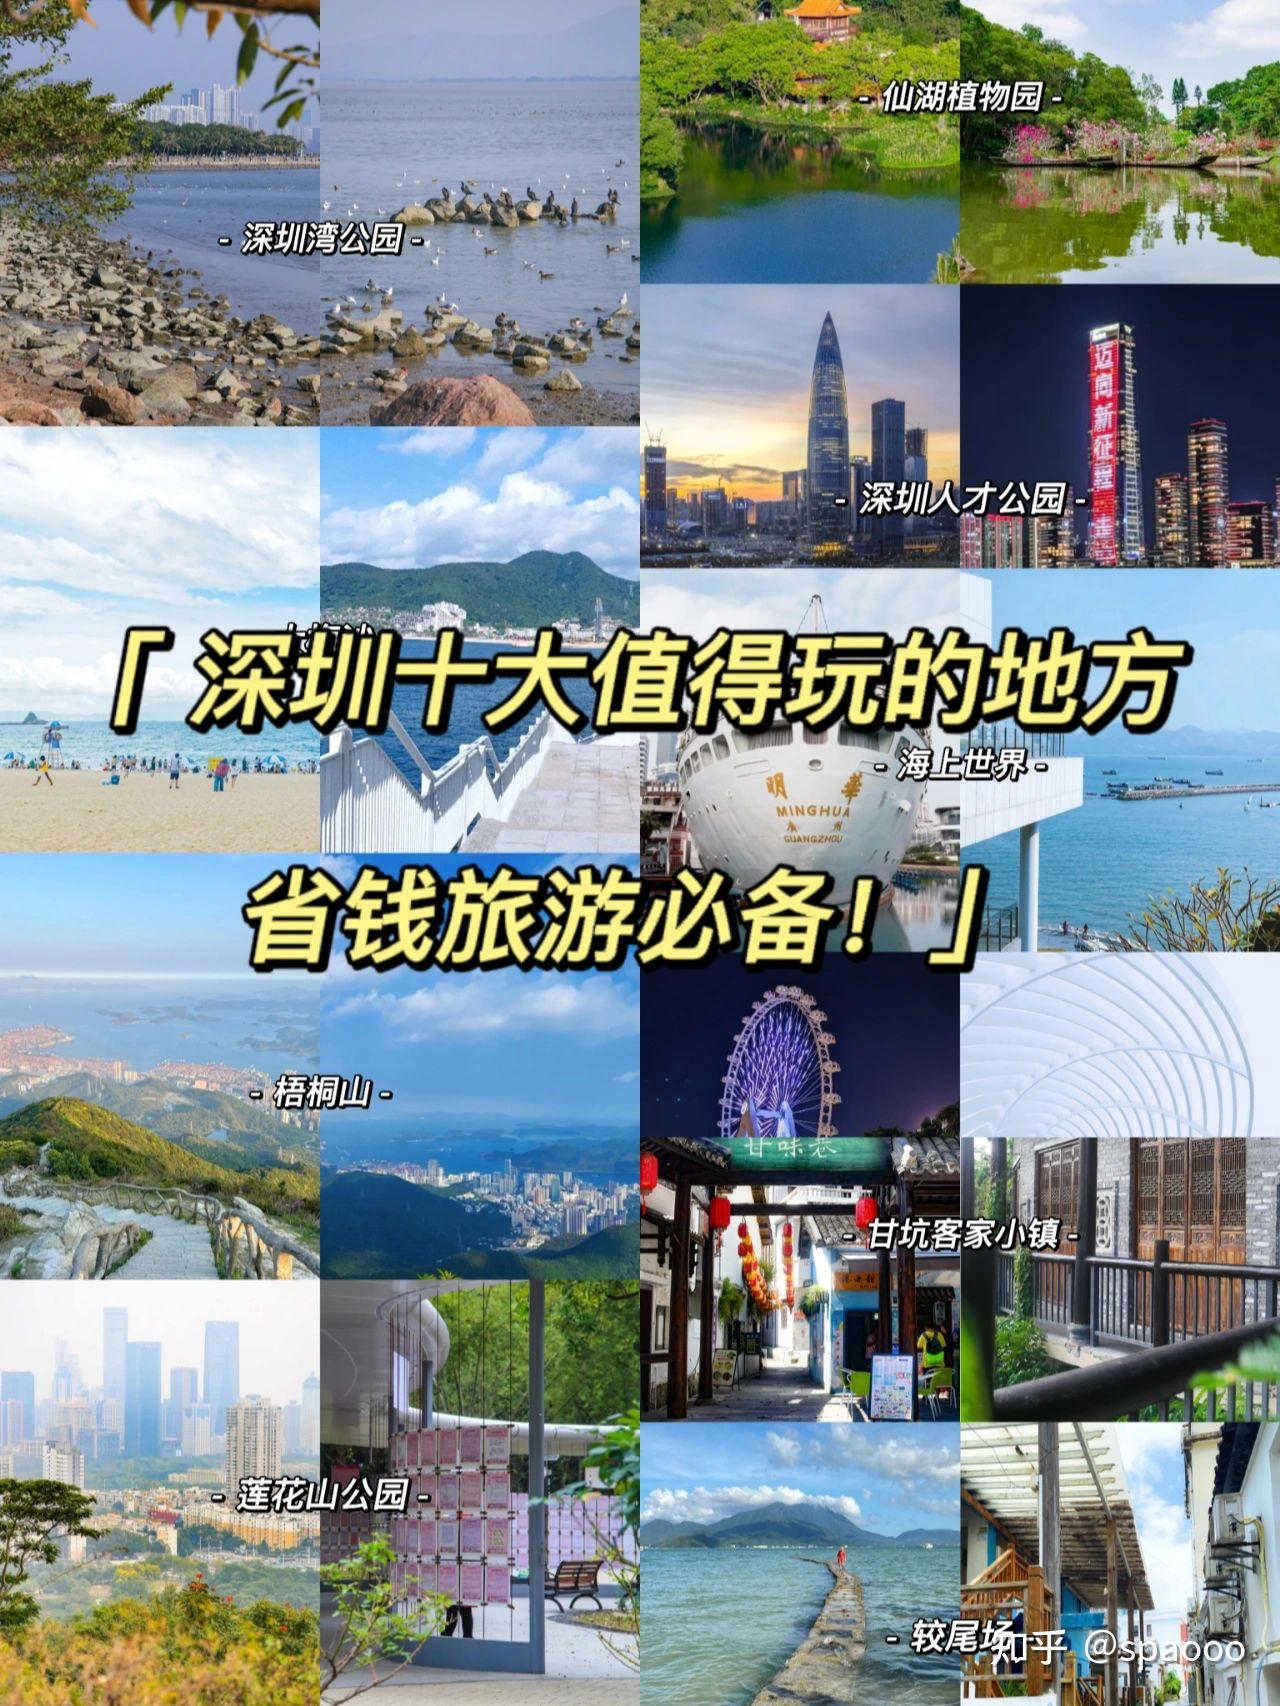 深圳旅游攻略景点推荐 深圳旅游必去十大景点